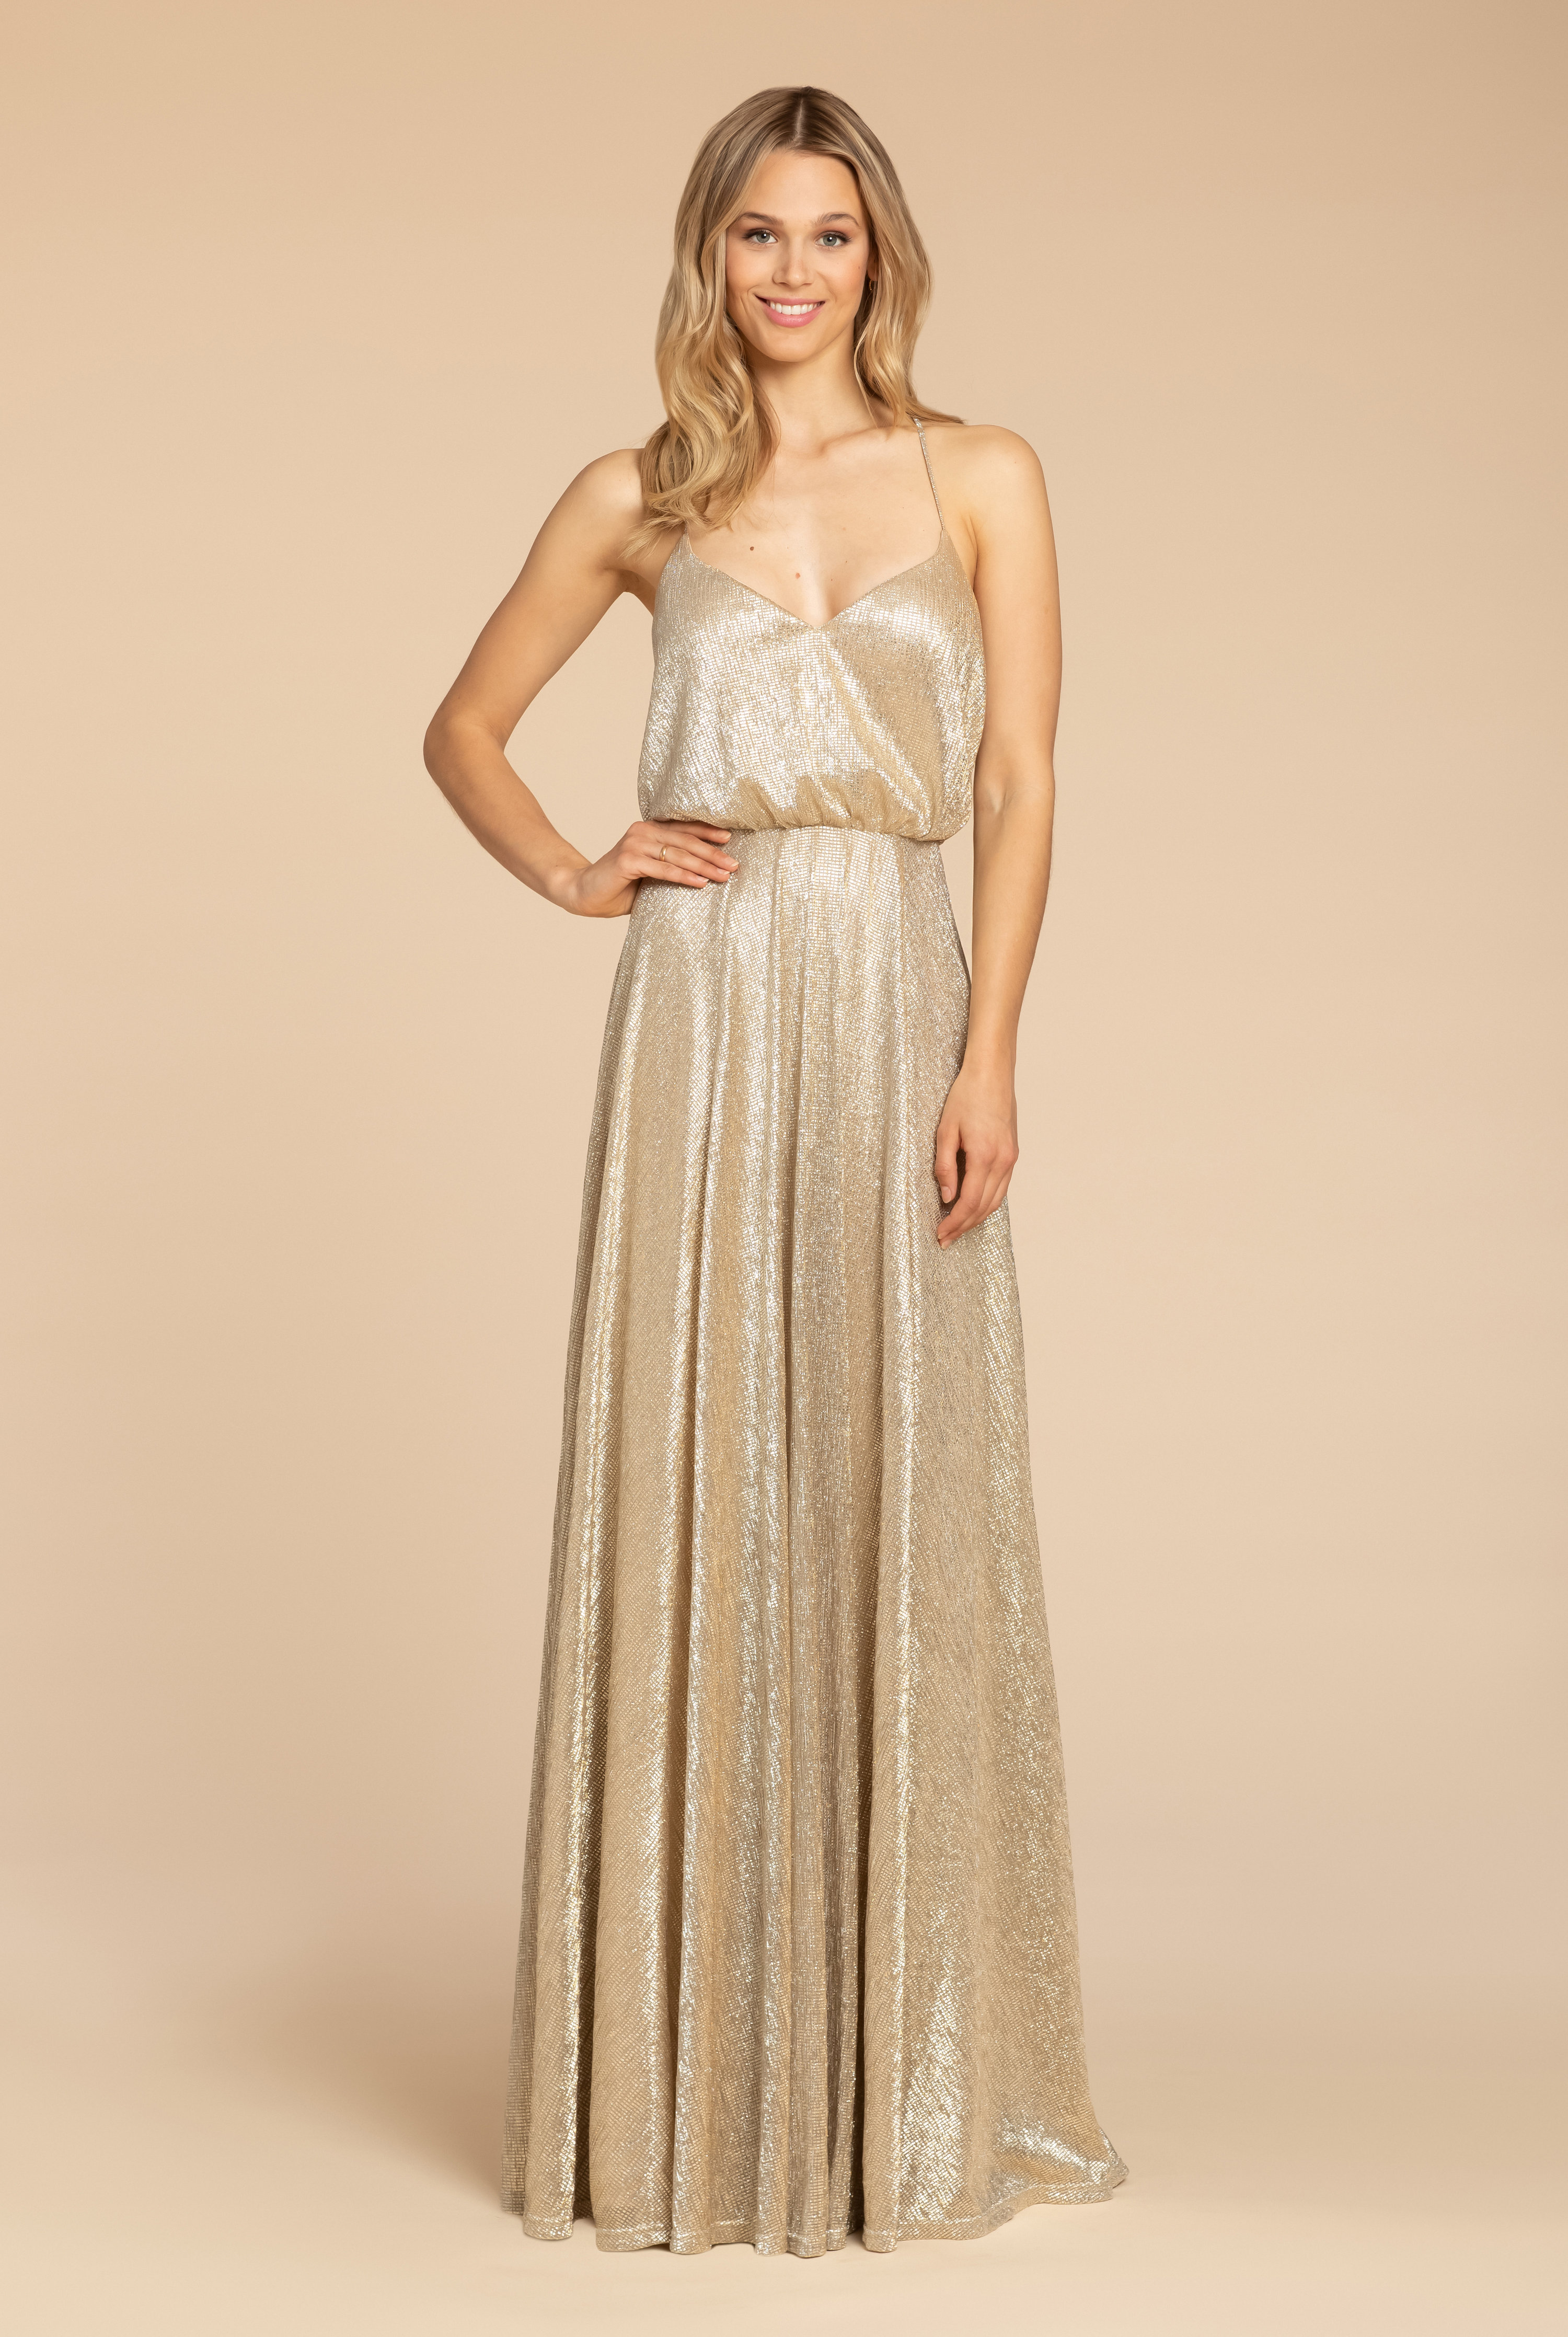 Gold metallic bridesmaid dresses